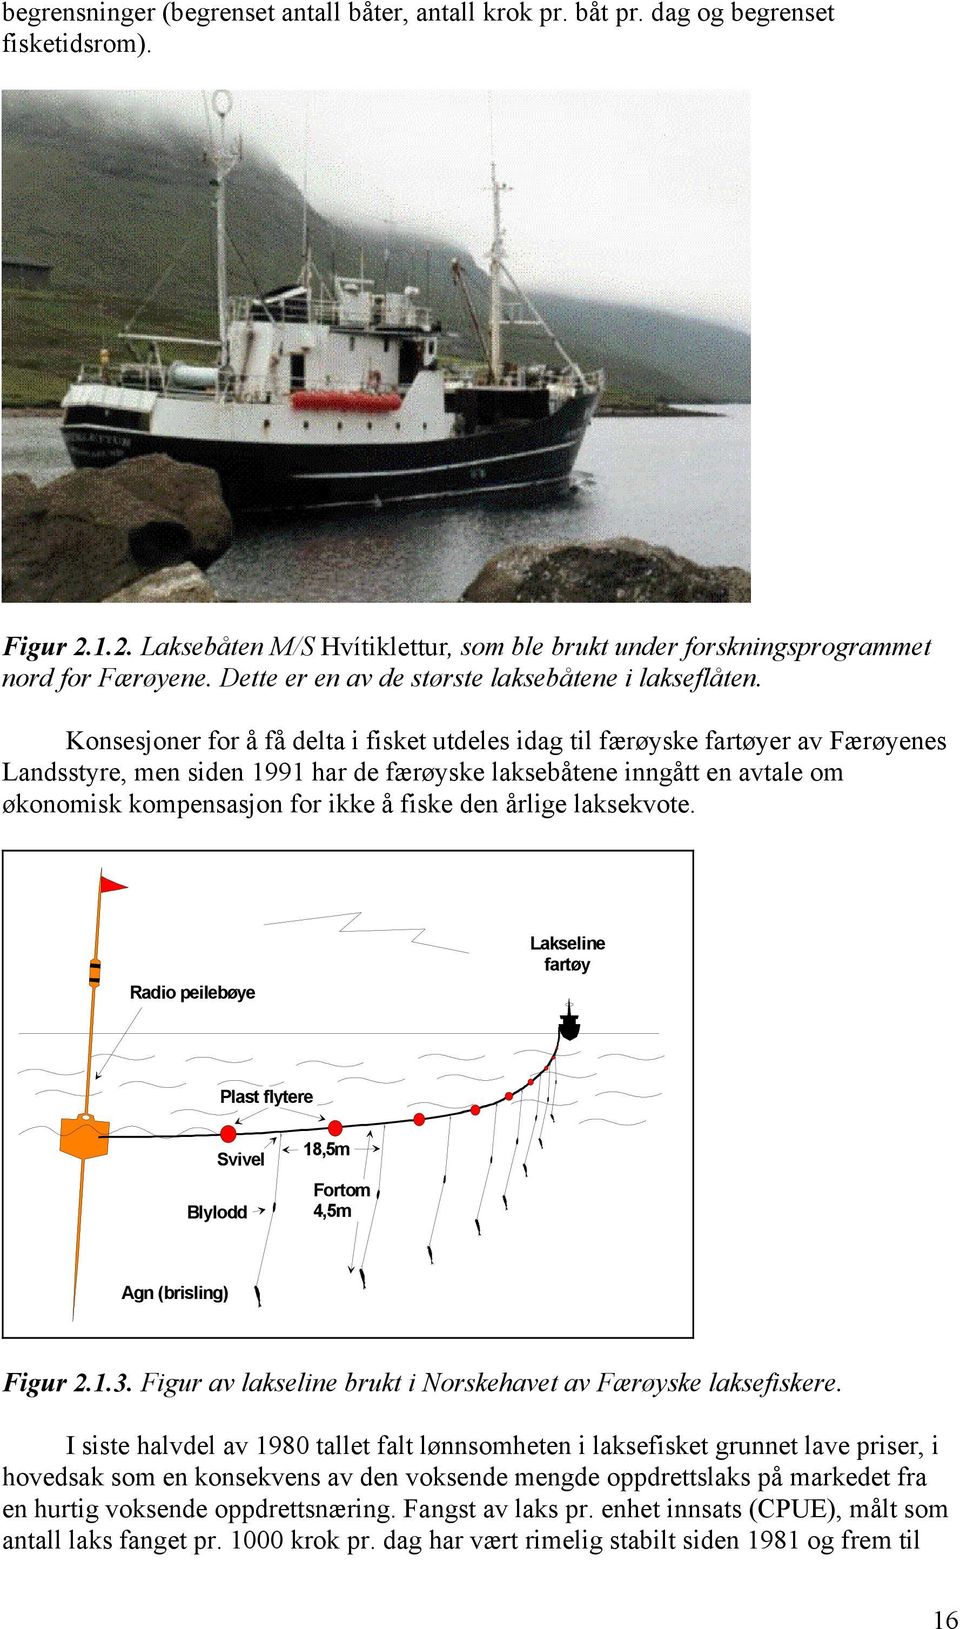 Konsesjoner for å få delta i fisket utdeles idag til færøyske fartøyer av Færøyenes Landsstyre, men siden 1991 har de færøyske laksebåtene inngått en avtale om økonomisk kompensasjon for ikke å fiske